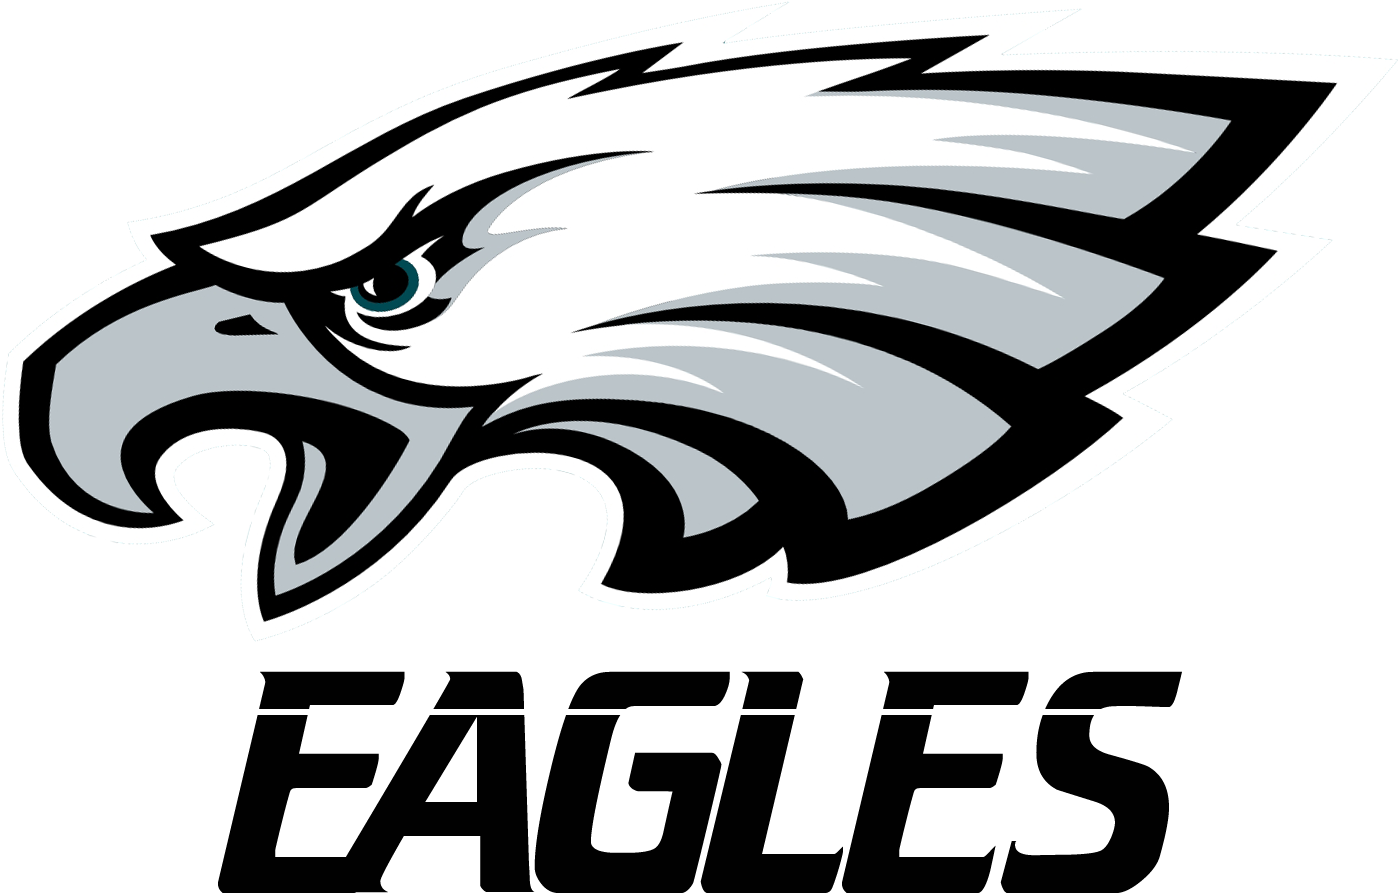 Philadelphia Eagles Background PNG Image